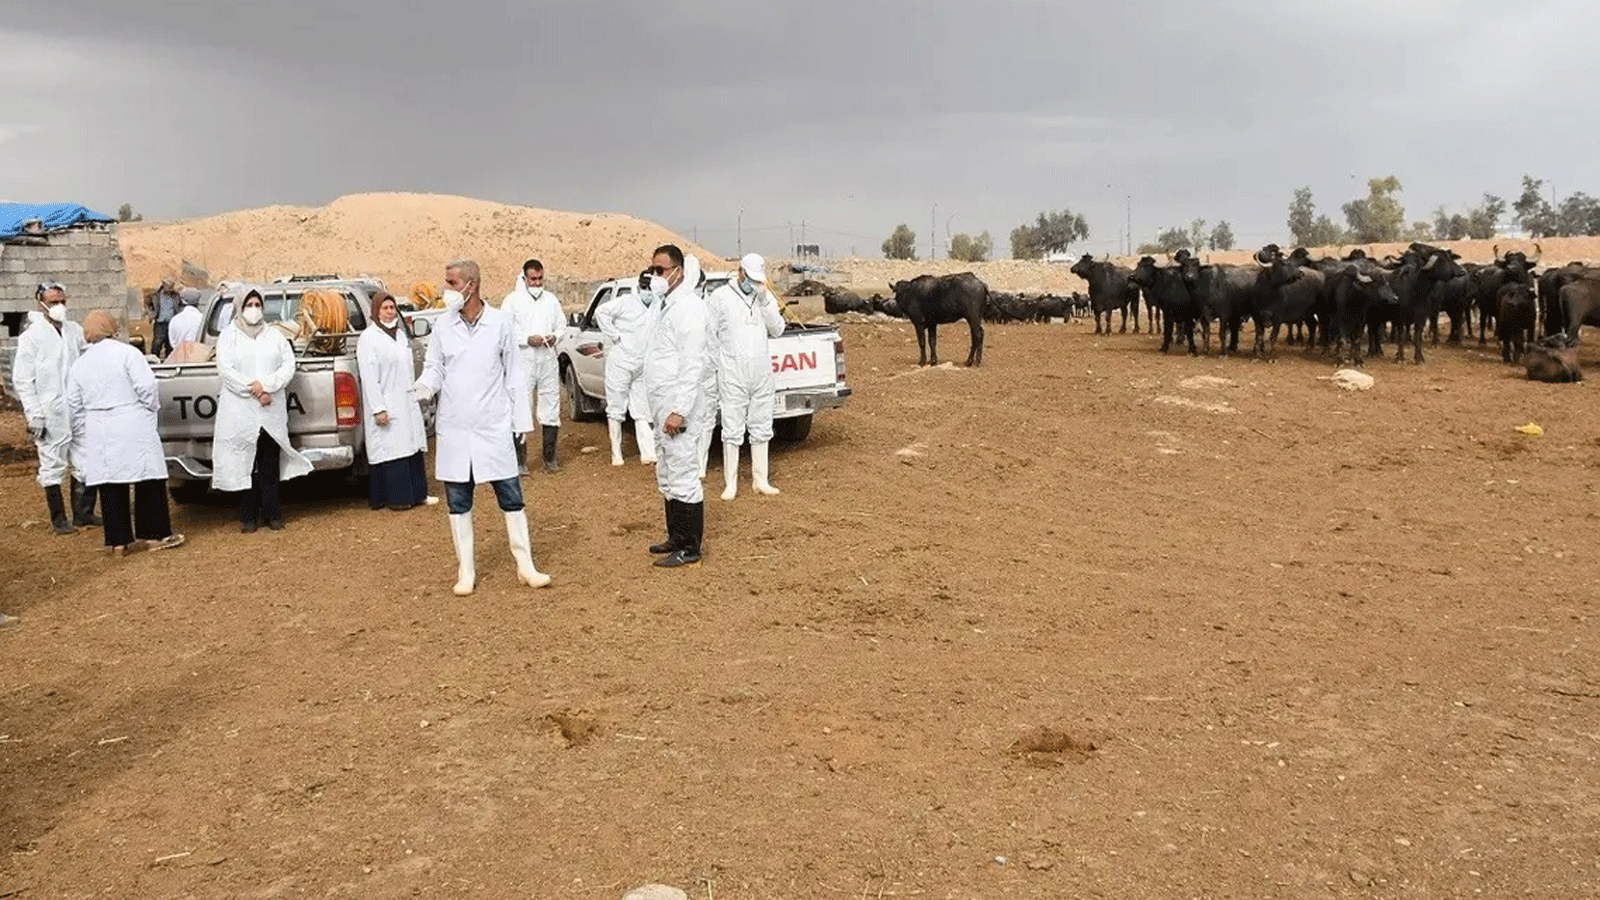 أعضاء فريق بيطري يستعدون لرش المطهر على الماشية في مدينة كركوك شمال العراق. في 7 مايو\أيار 2022، بعد يوم من تسجيل أول حالة وفاة بسبب حمى القرم والكونغو النزفية